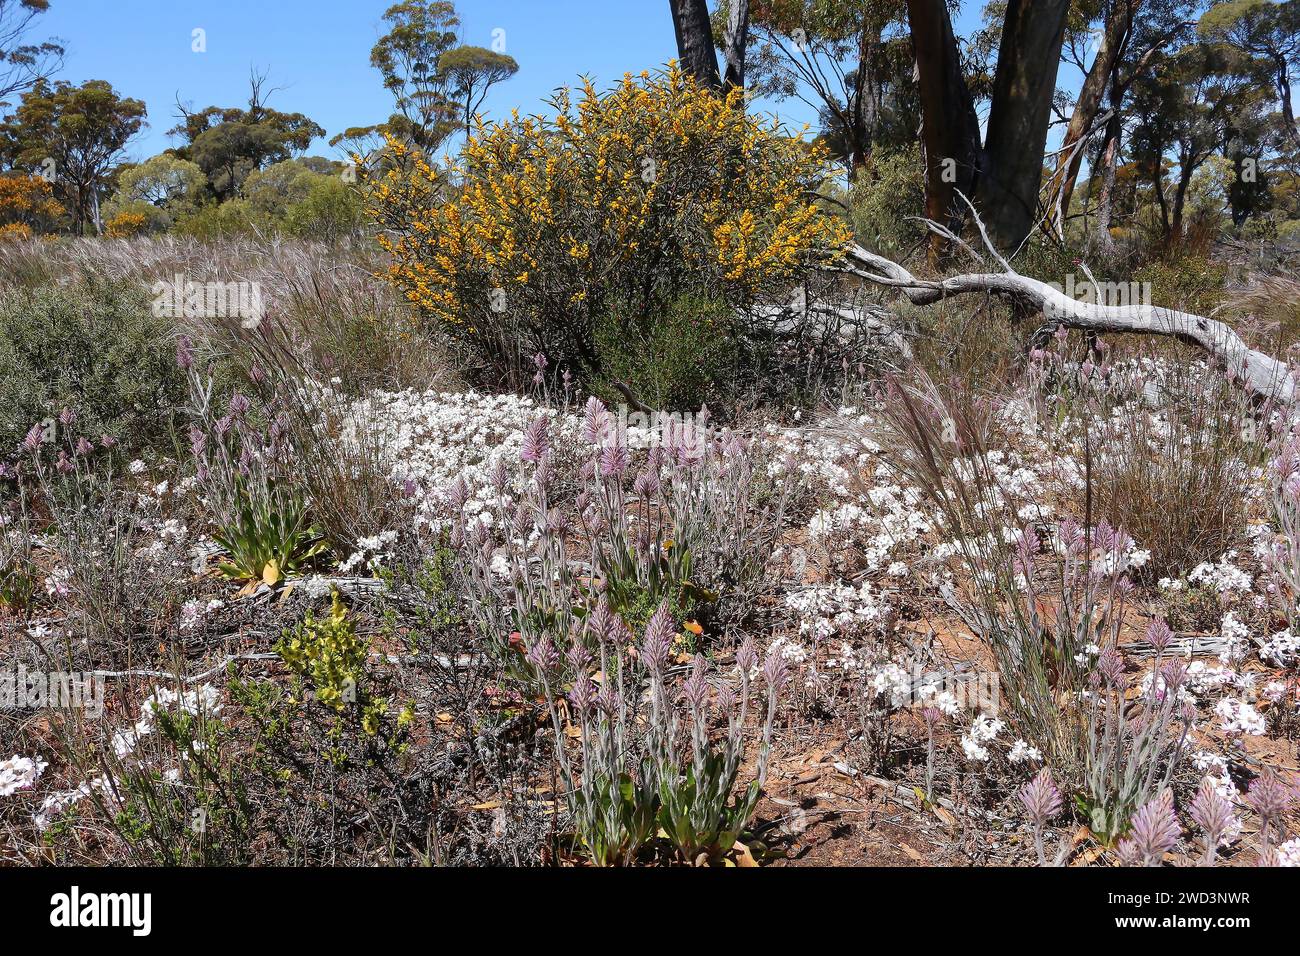 Primavera en el interior del oeste de Australia, cuando las flores silvestres endémicas como Mulla mulla, margaritas blancas eternas y un arbusto amarillo de los aguardientes están en el mundo Foto de stock